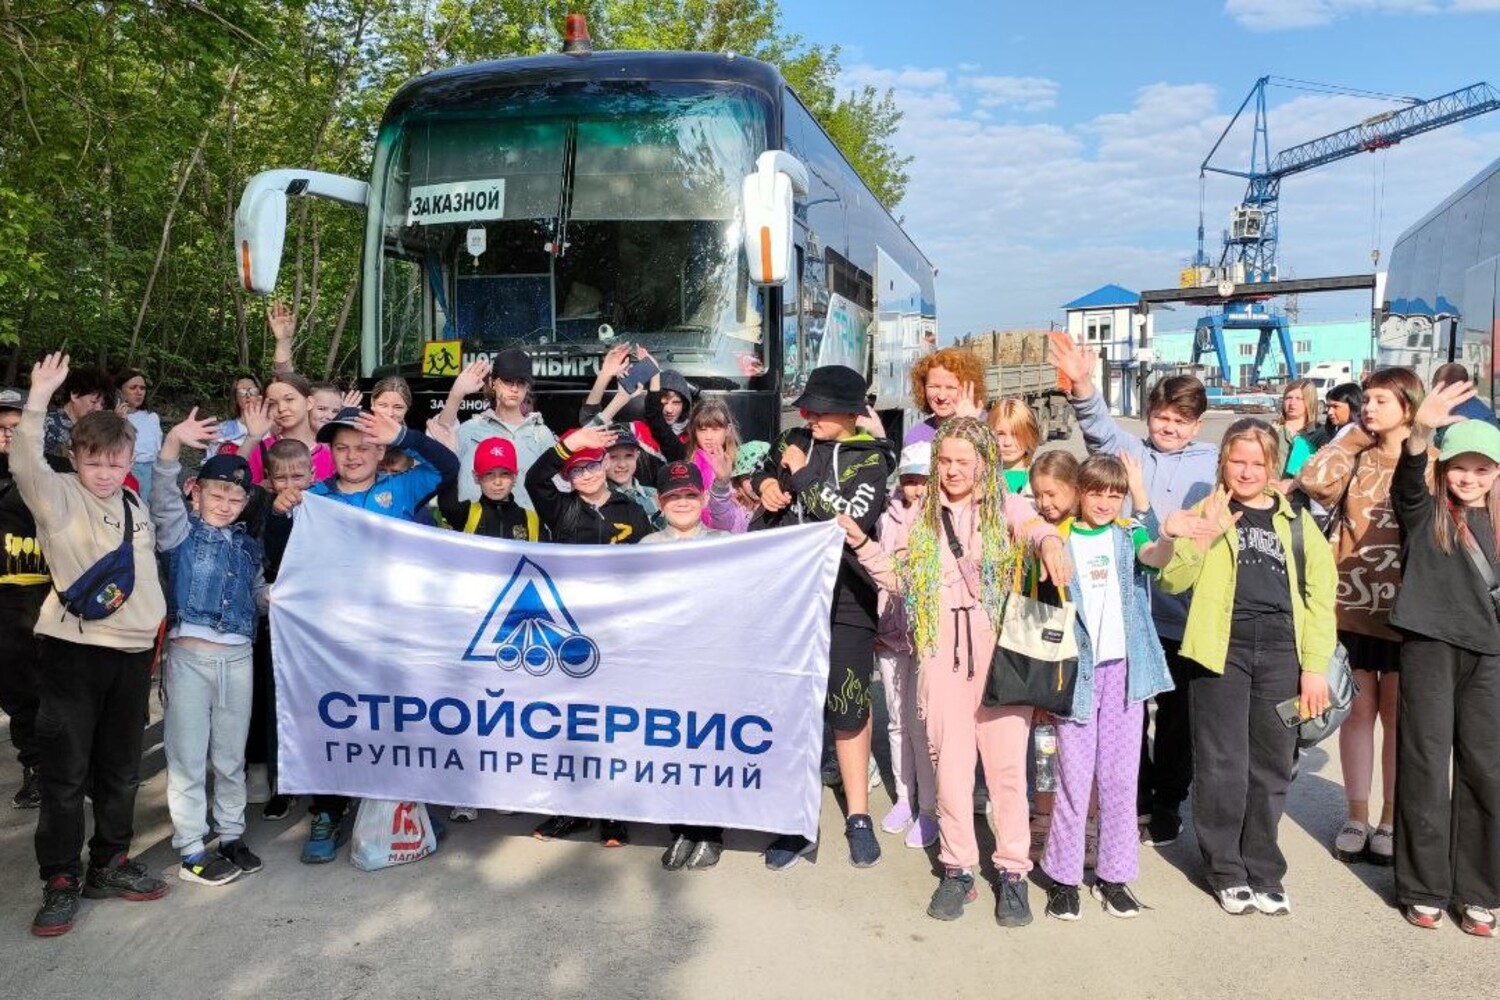 Детский лагерь в Бердске примет детей сотрудников предприятий «Стройсервиса» на летний отдых